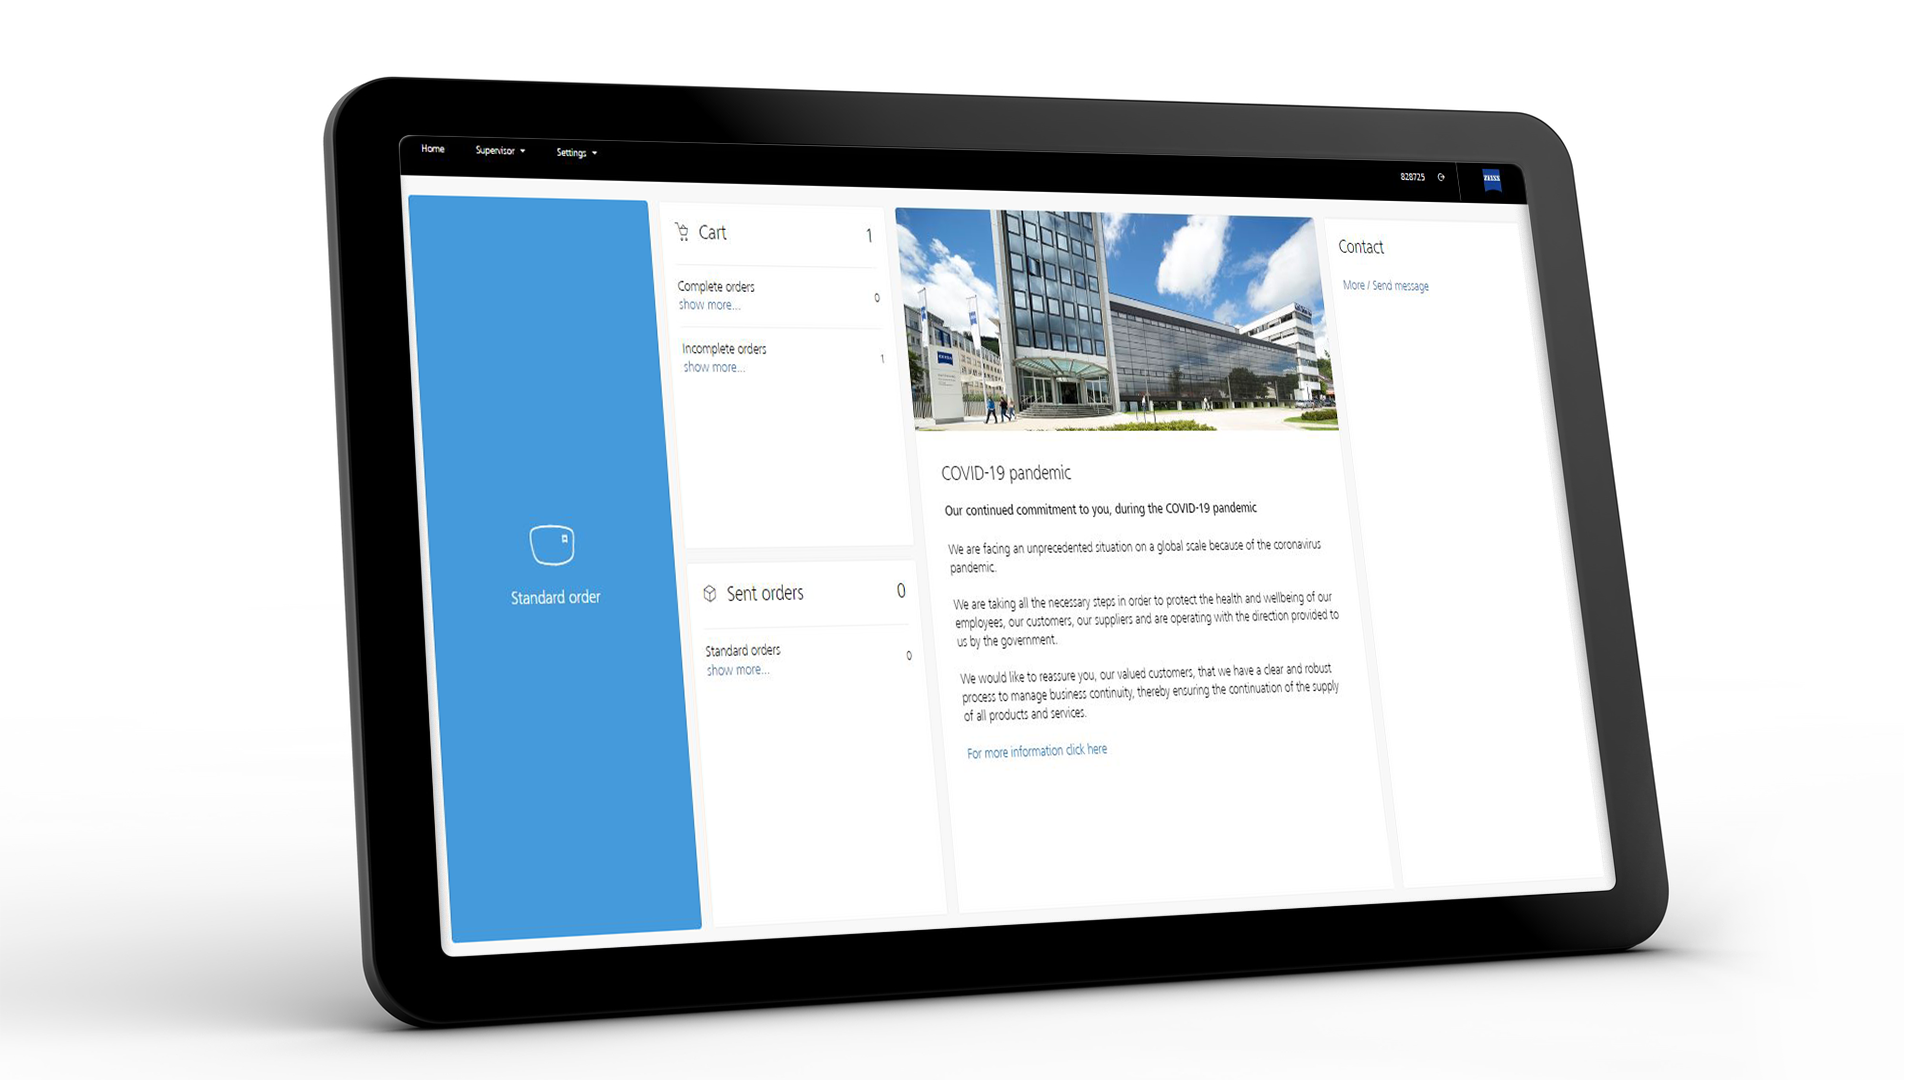 Ekran tabletu przedstawiający interfejs ZEISS VISUSTORE dla zamówień standardowych 